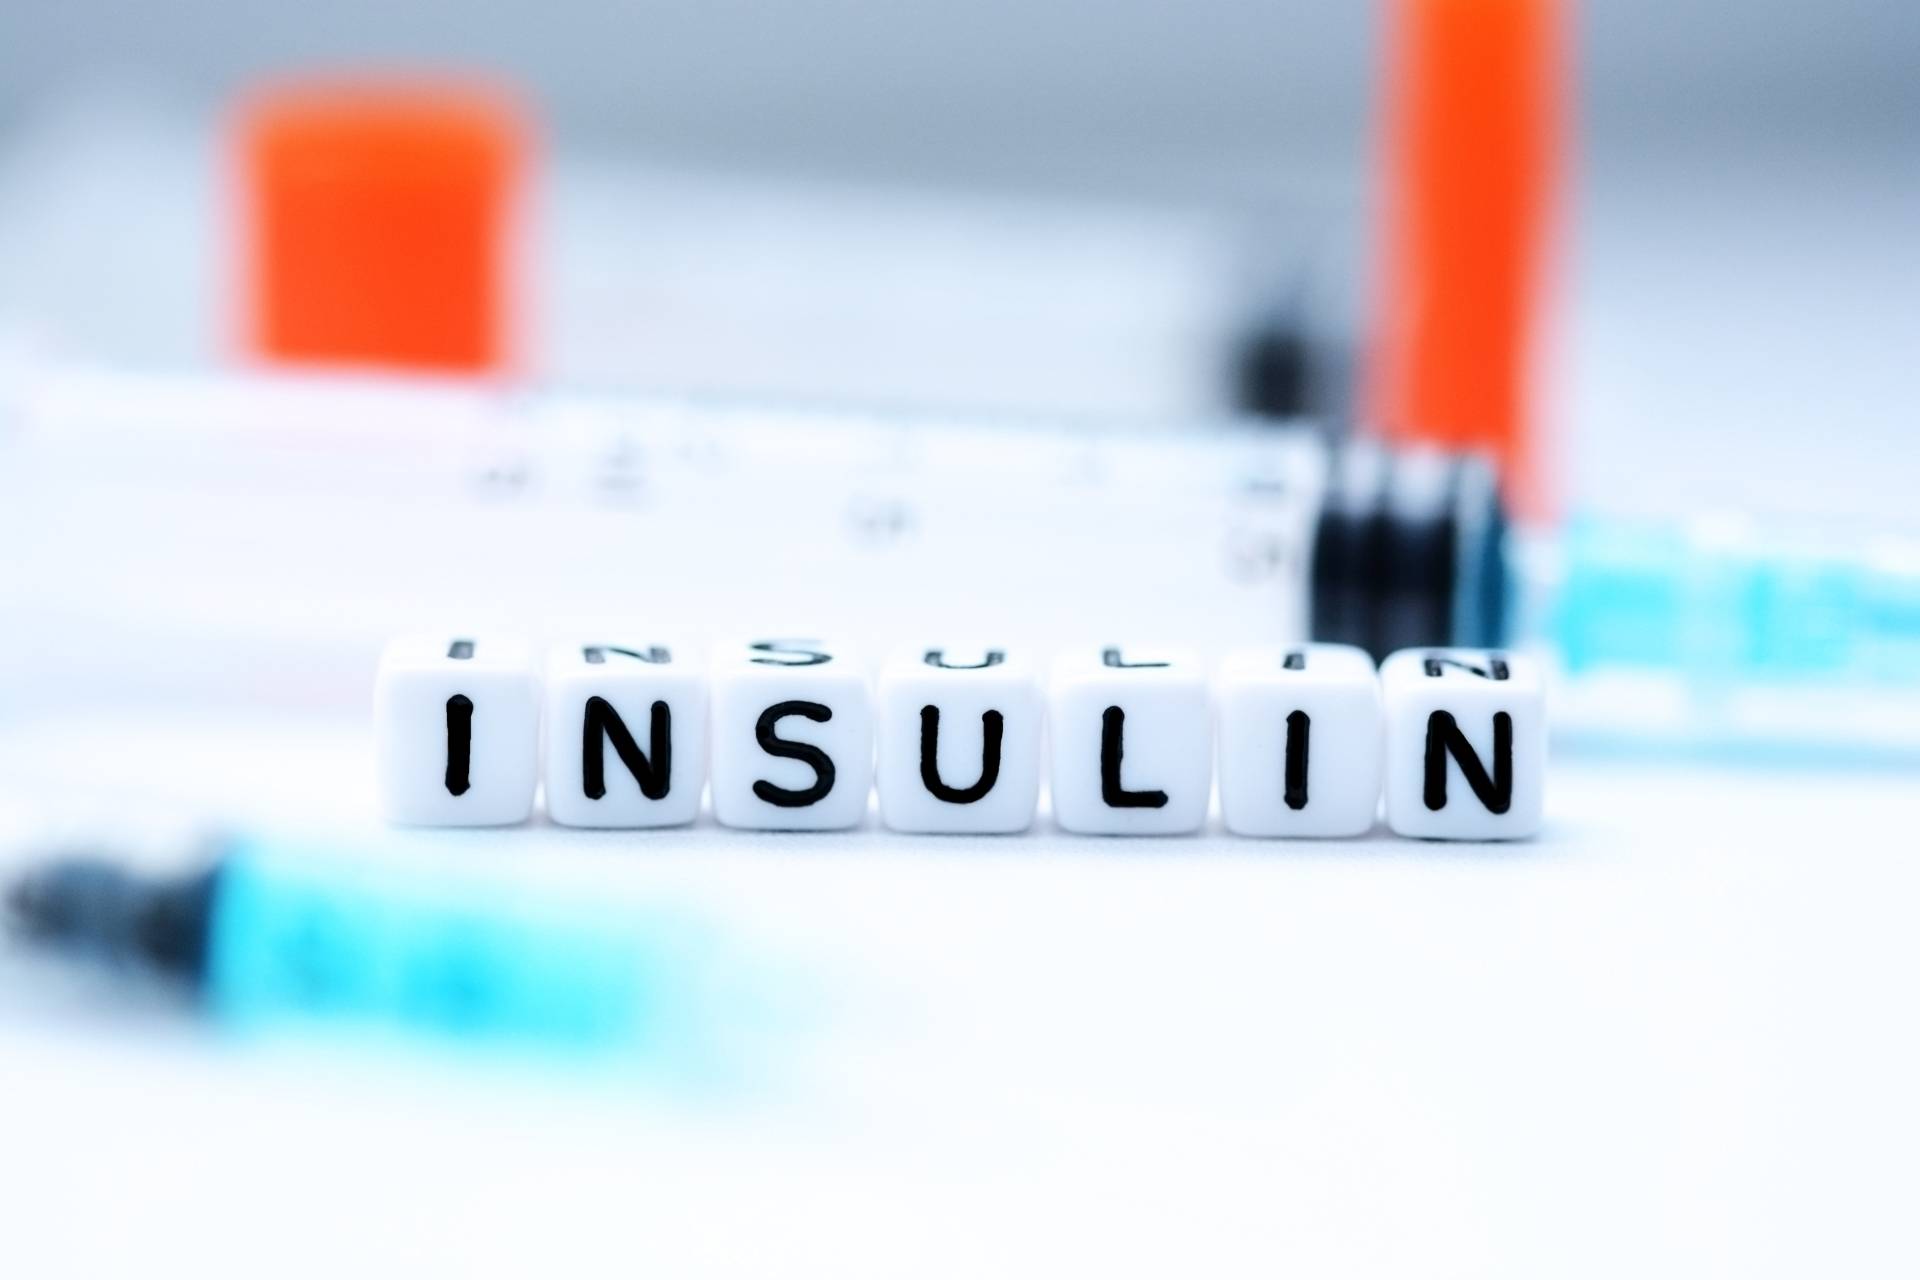 Insulina - jak hormon ten wpływa na procesy zachodzące w ludzkim organizmie? Czym jest insulina i dlaczego oporność na nią może prowadzić do chorób przewlekłych. Na blacie w laboratorium leżą strzykawki i ułożony z małych plastikowych klocków napis insulin.